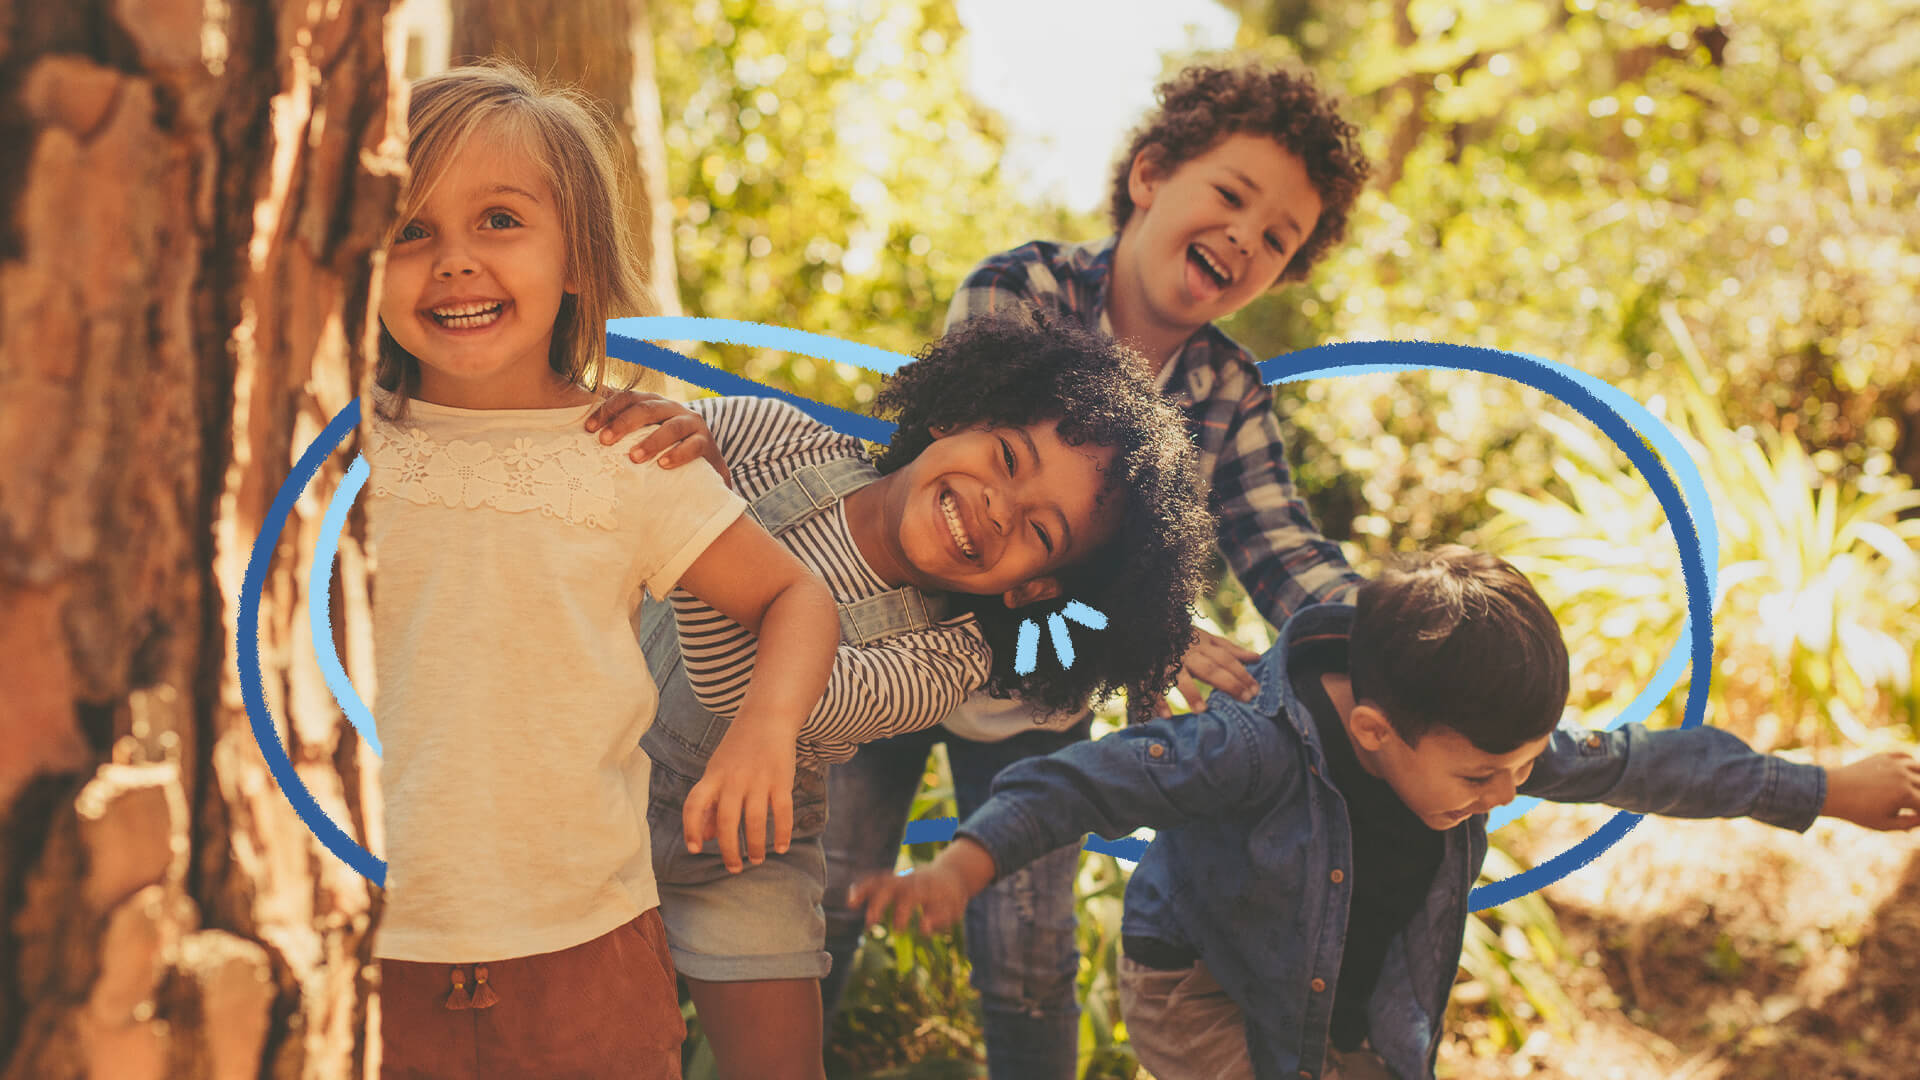 Cultura da infância: Um grupo de quatro crianças, duas meninas e dois meninos, estão brincando ao ar livre